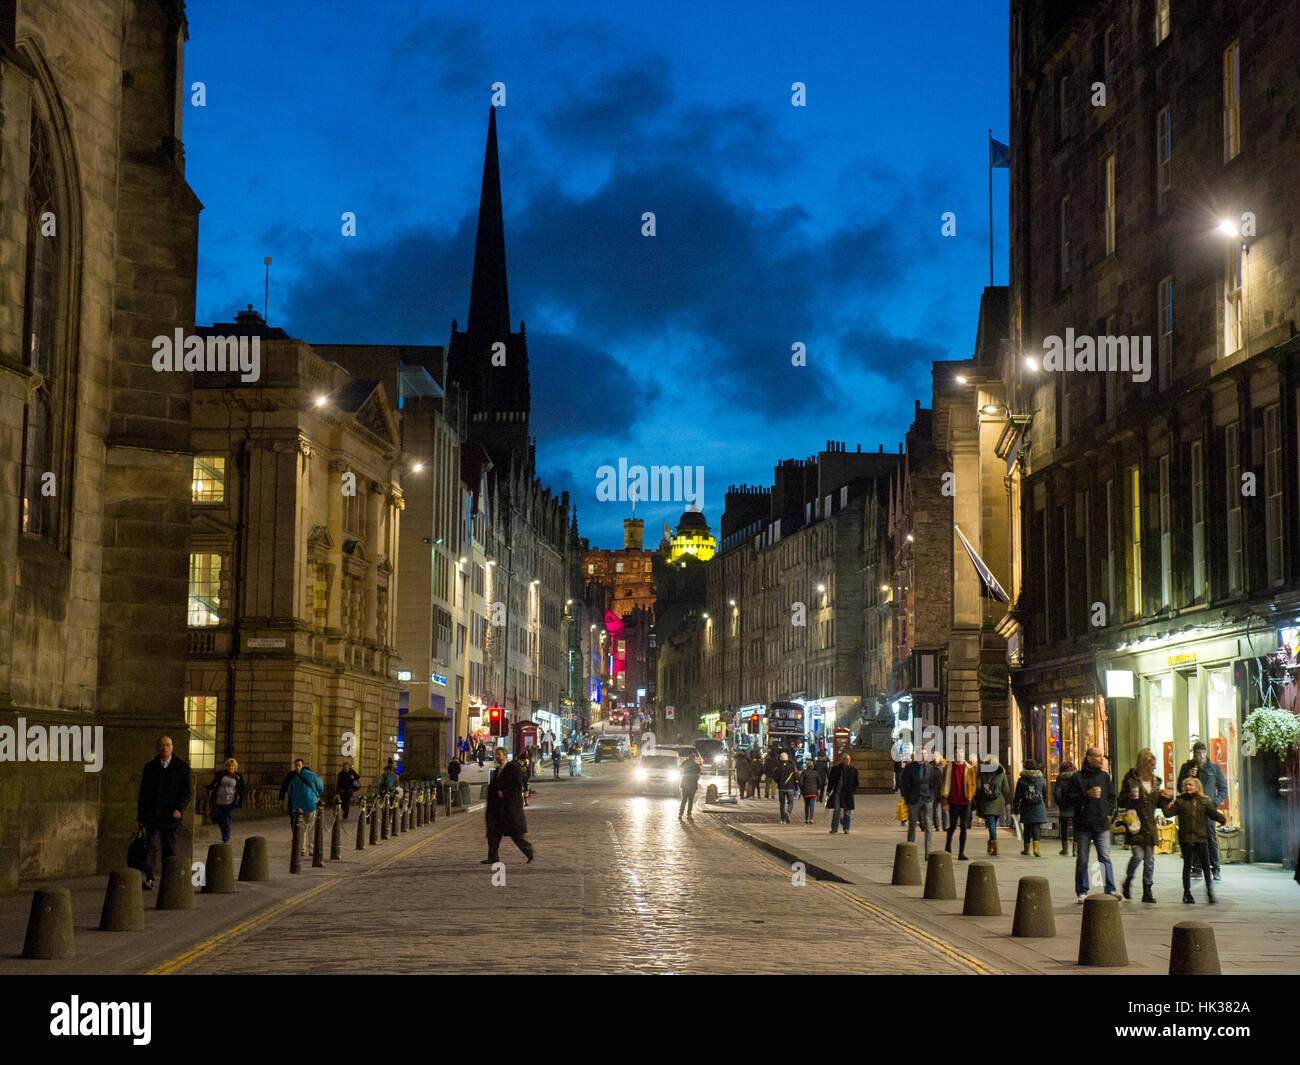 Edimburgo, Scozia - Il Royal Mile/ High Street nella città vecchia di Edimburgo con persone non identificate. Foto Stock